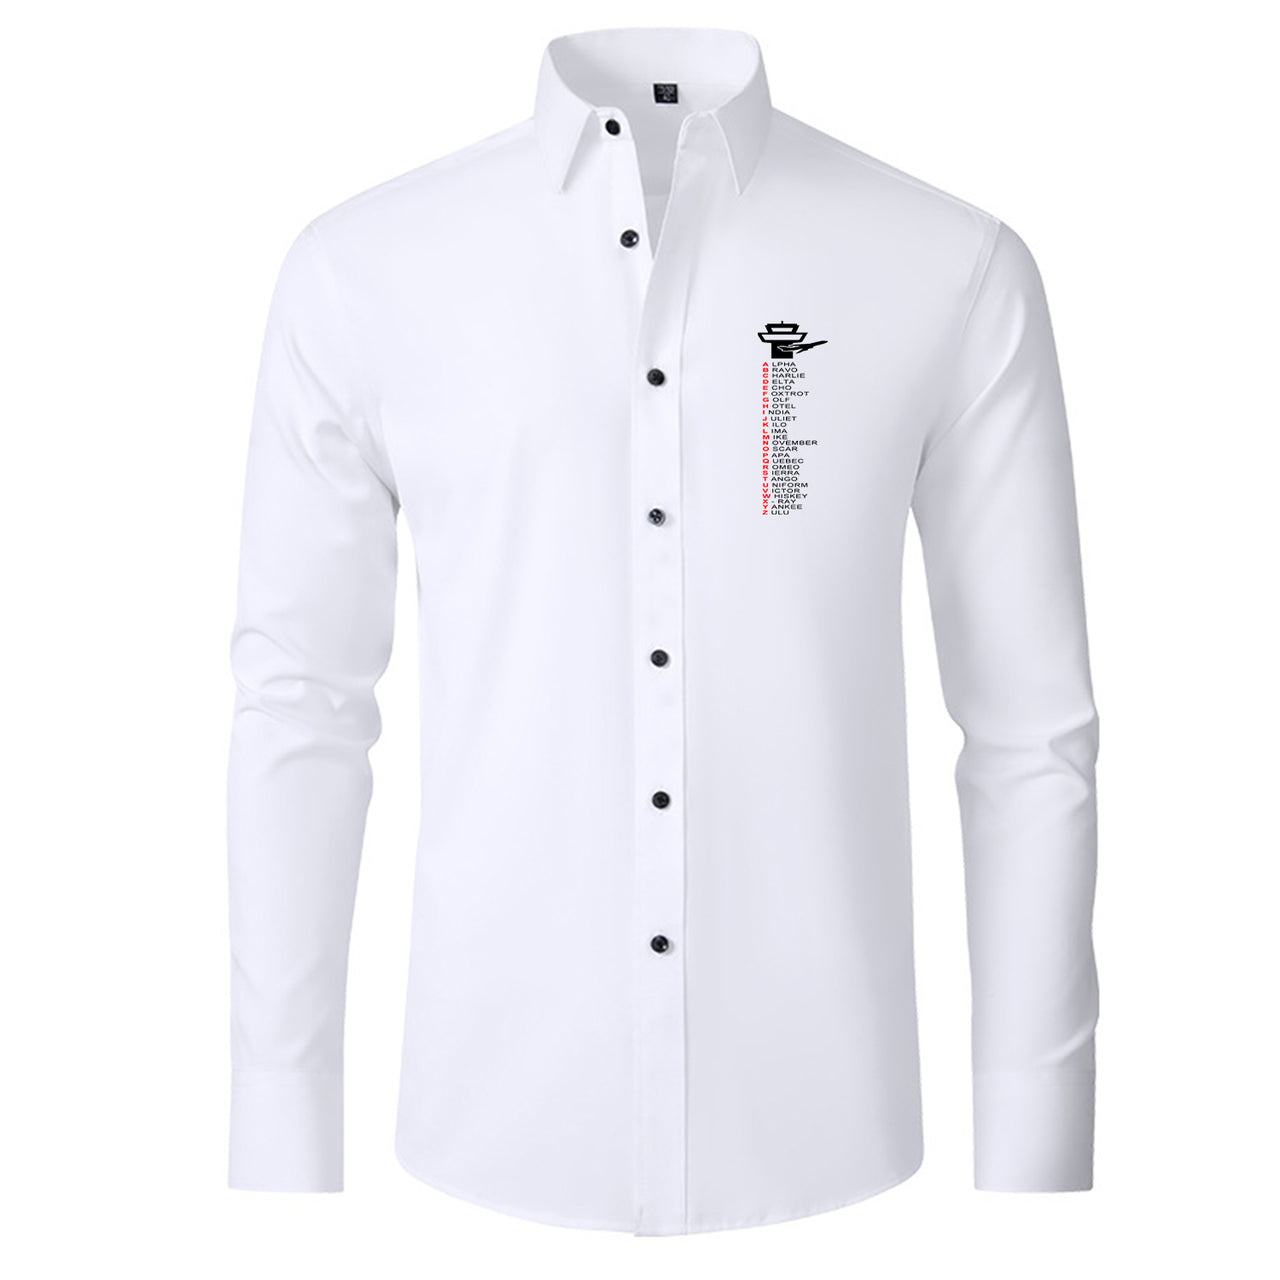 Aviation Alphabet Designed Long Sleeve Shirts